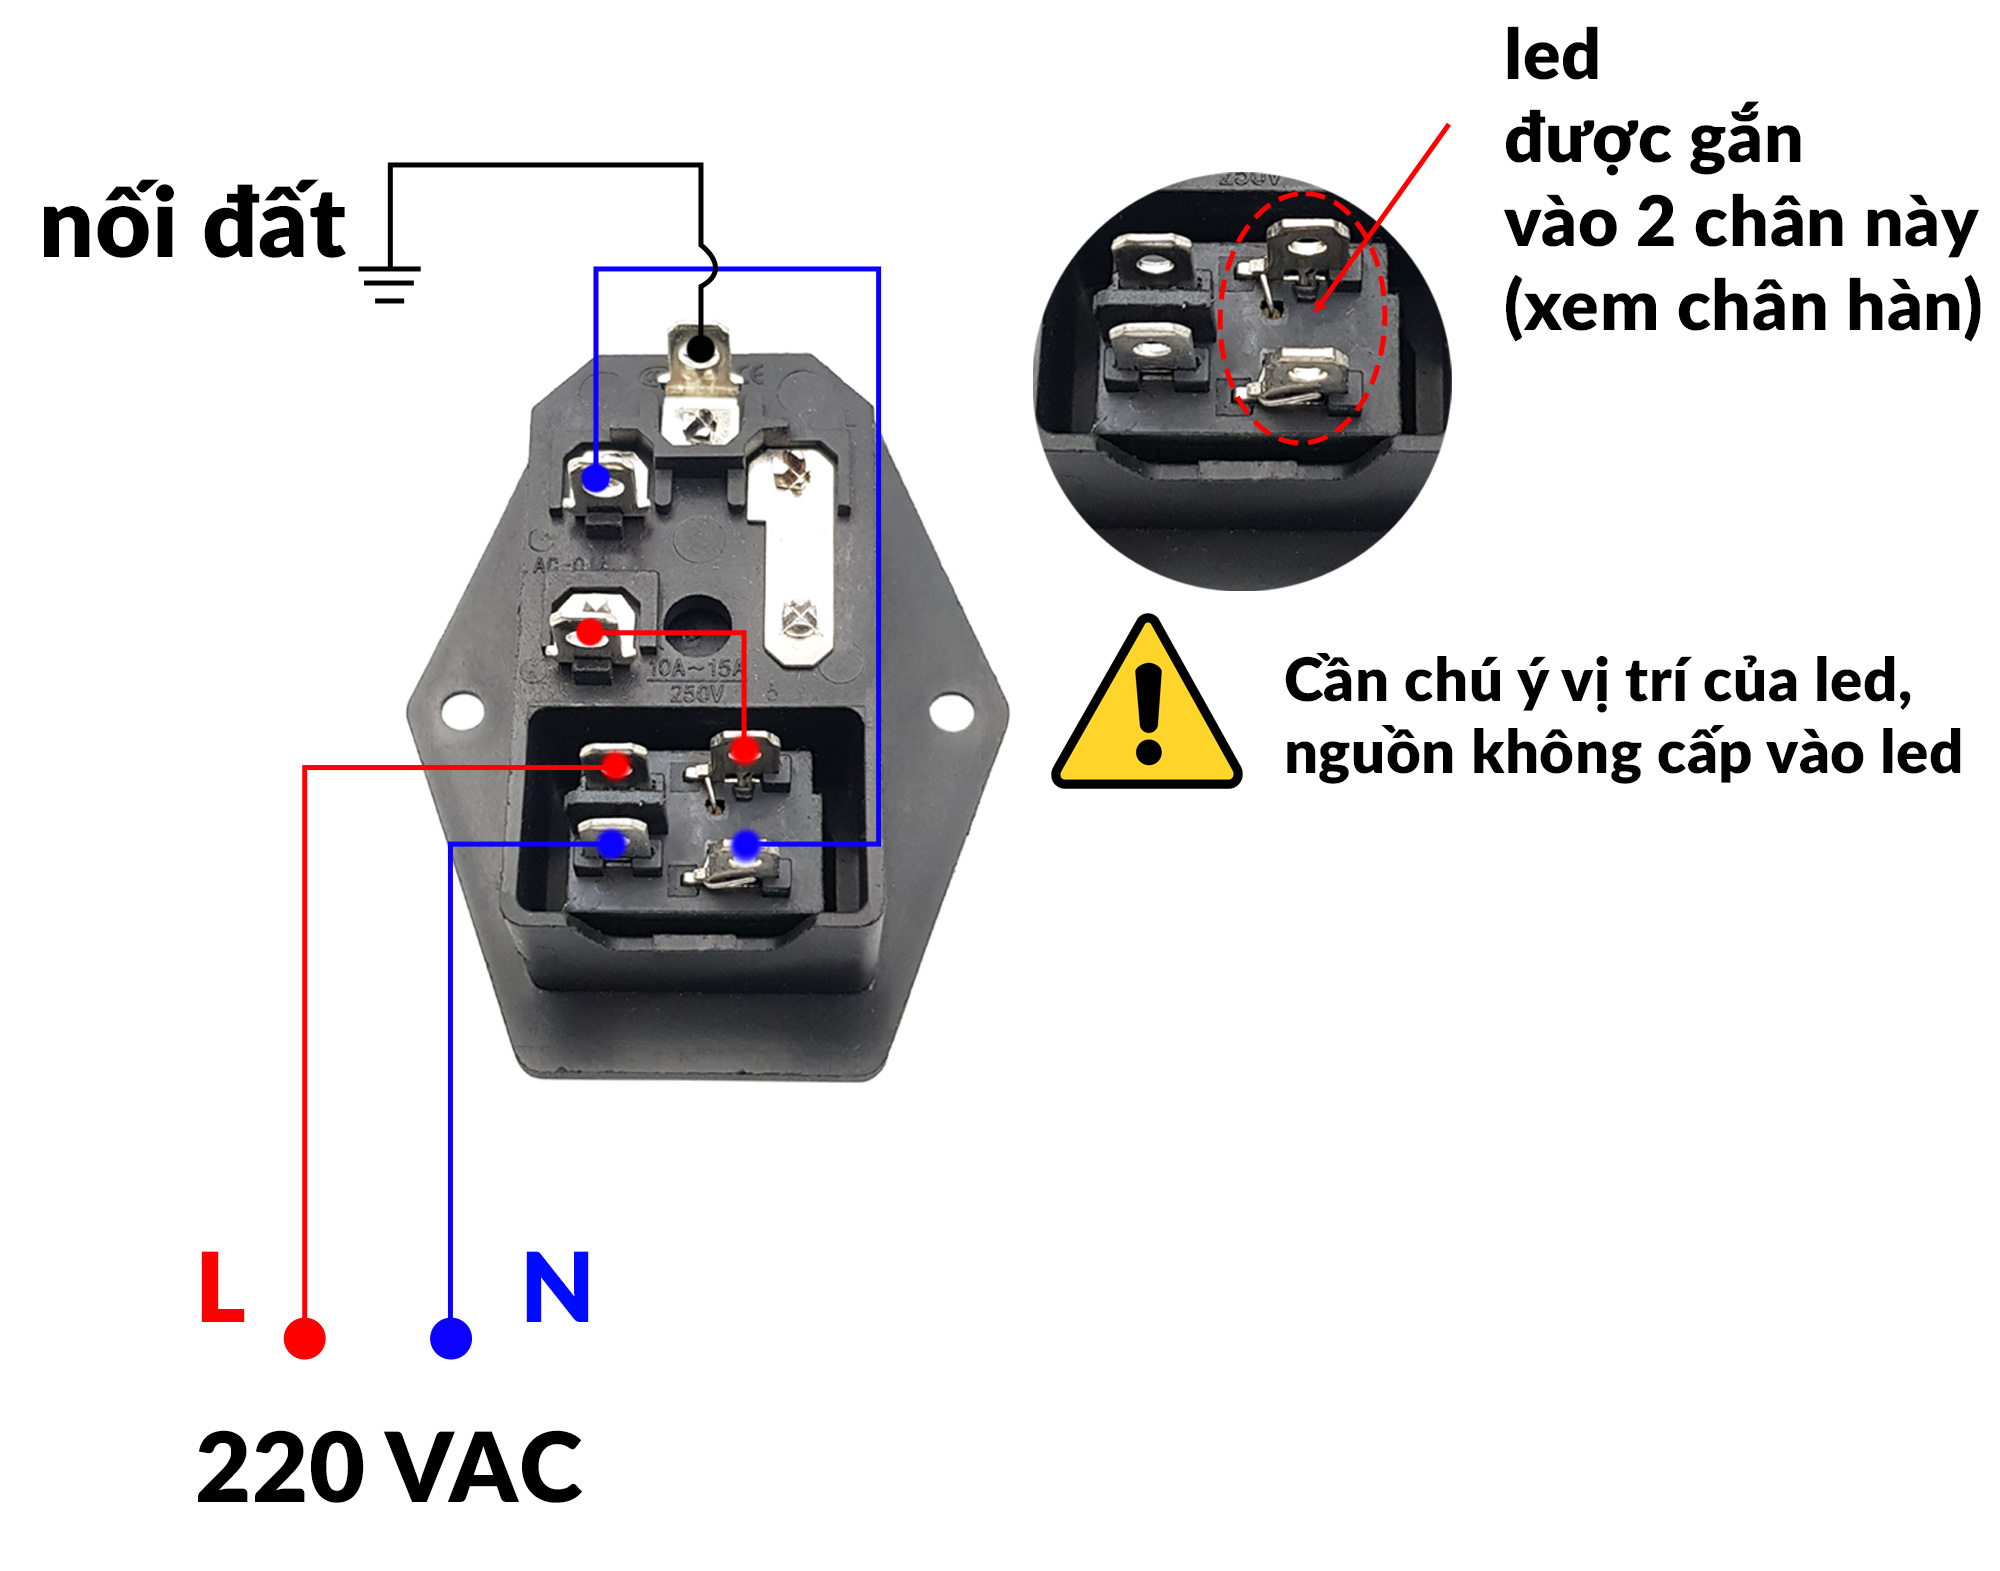 Ổ cắm dây nguồn AC-01A 15A/250V tích hợp công tắc